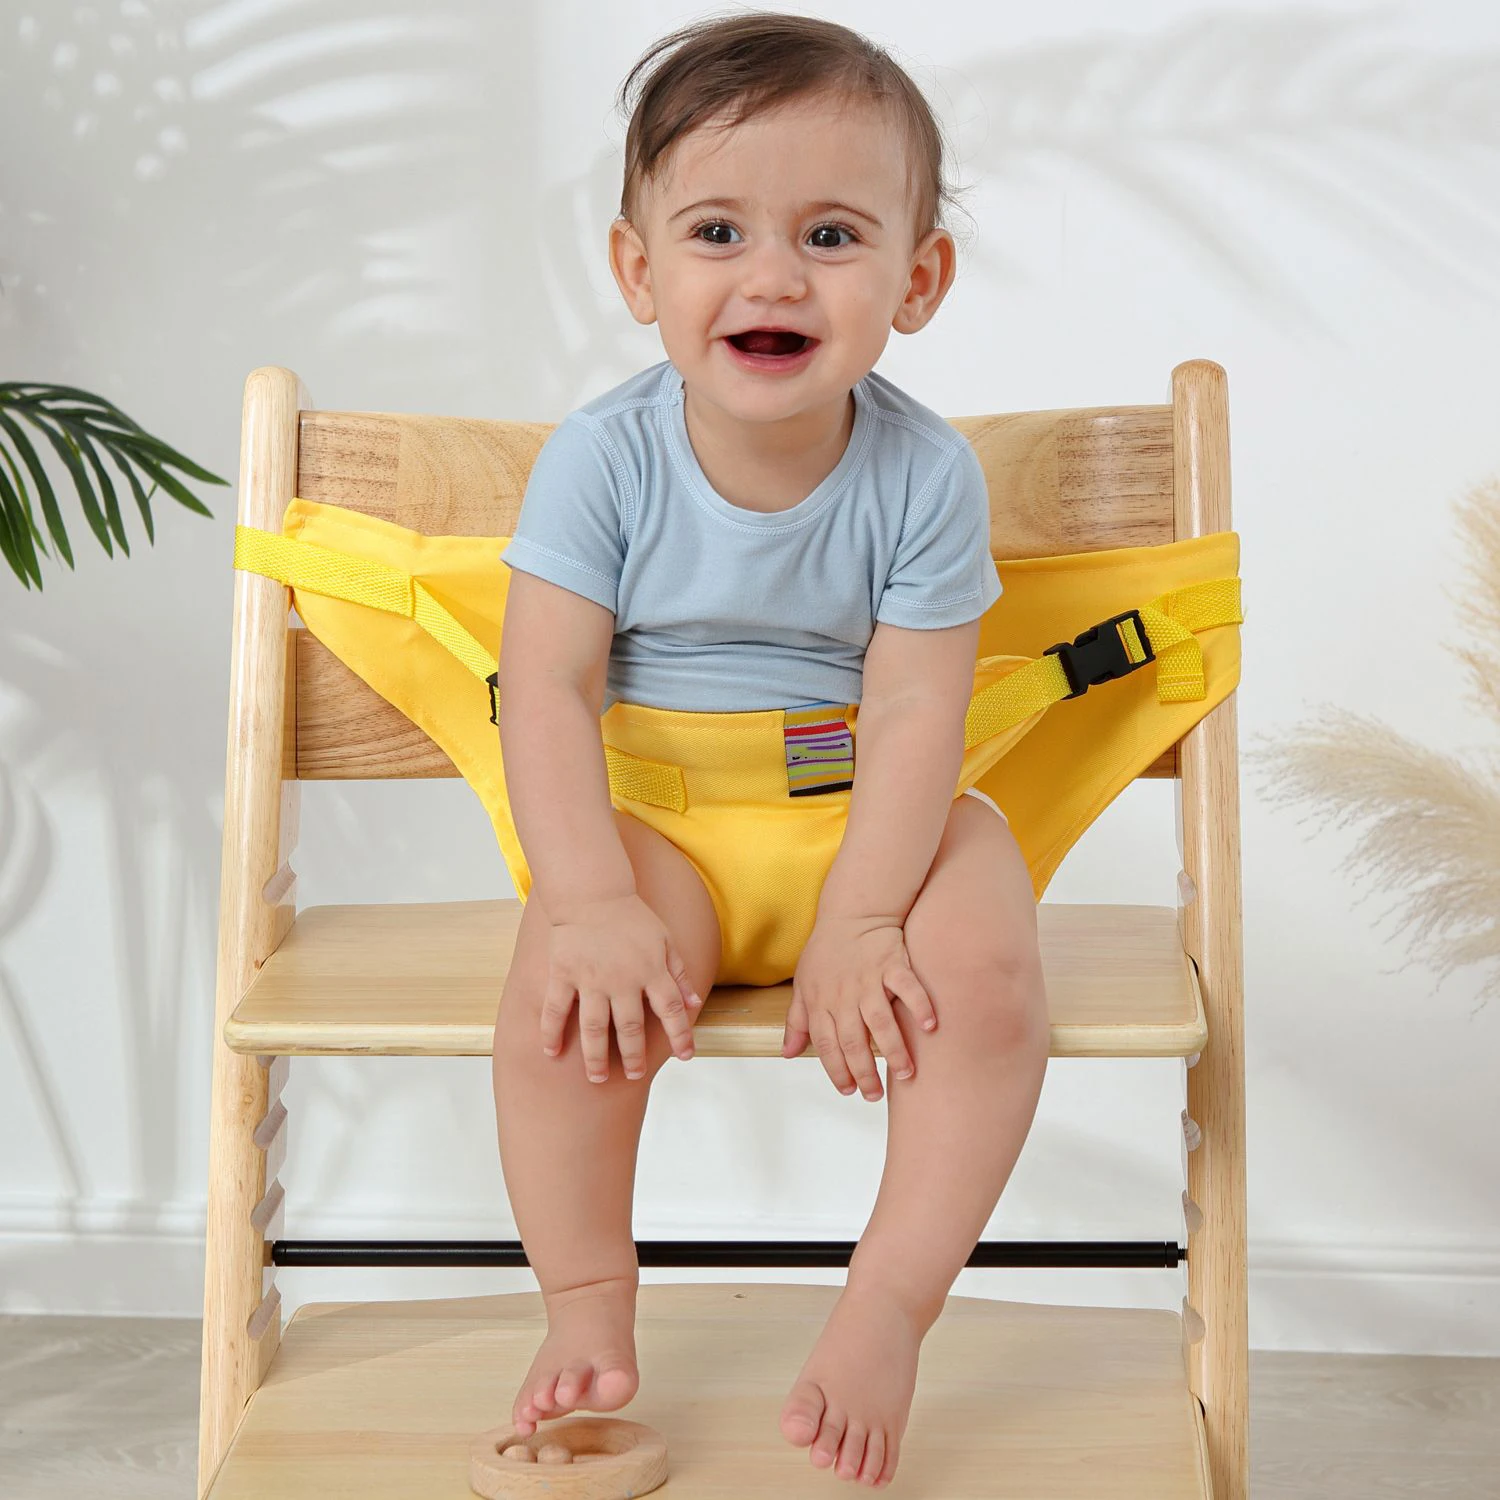 Ceinture de sécurité pour chaise de salle à manger pour bébé, portable, lavable, sangle de sécurité pour siège haut pour enfants de 6 mois à 3 ans